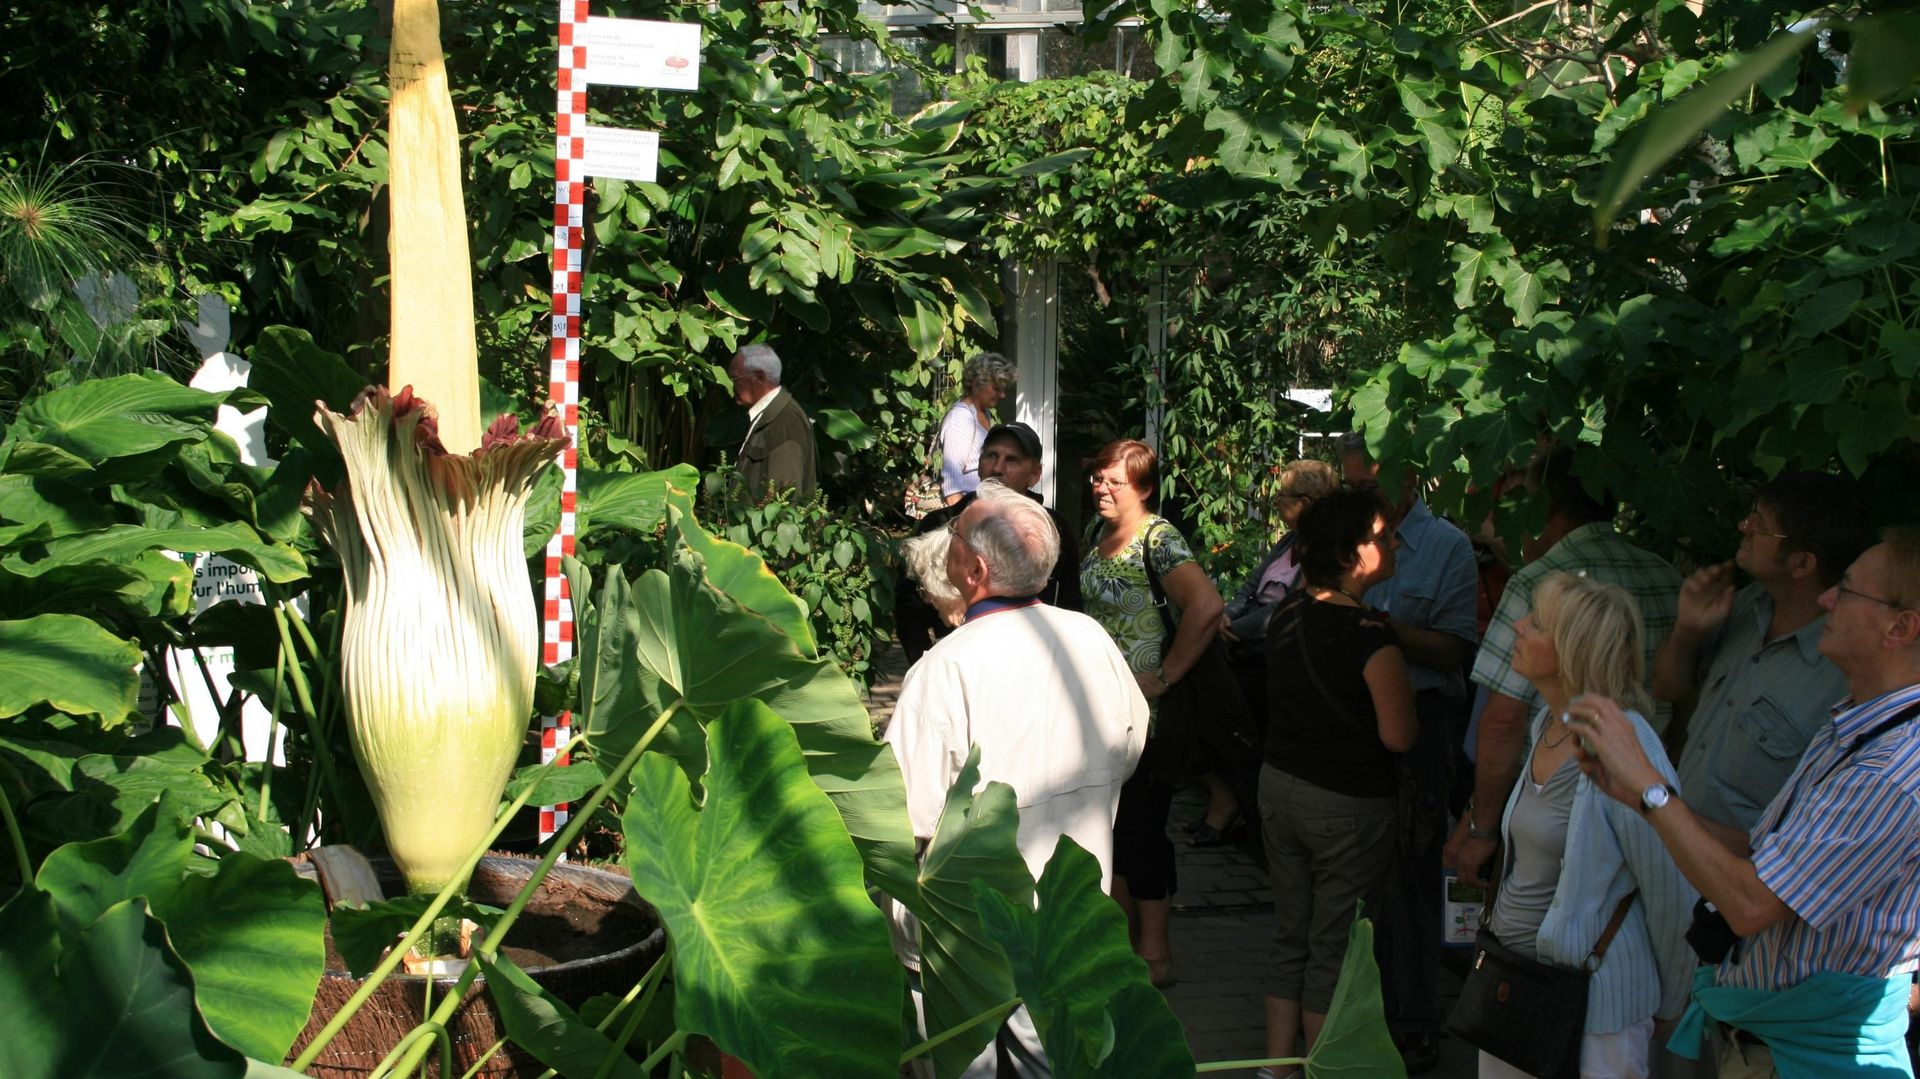 Le Jardin botanique national de Meise devient flamand, après approbation de la Fédération Wallonie-Bruxelles